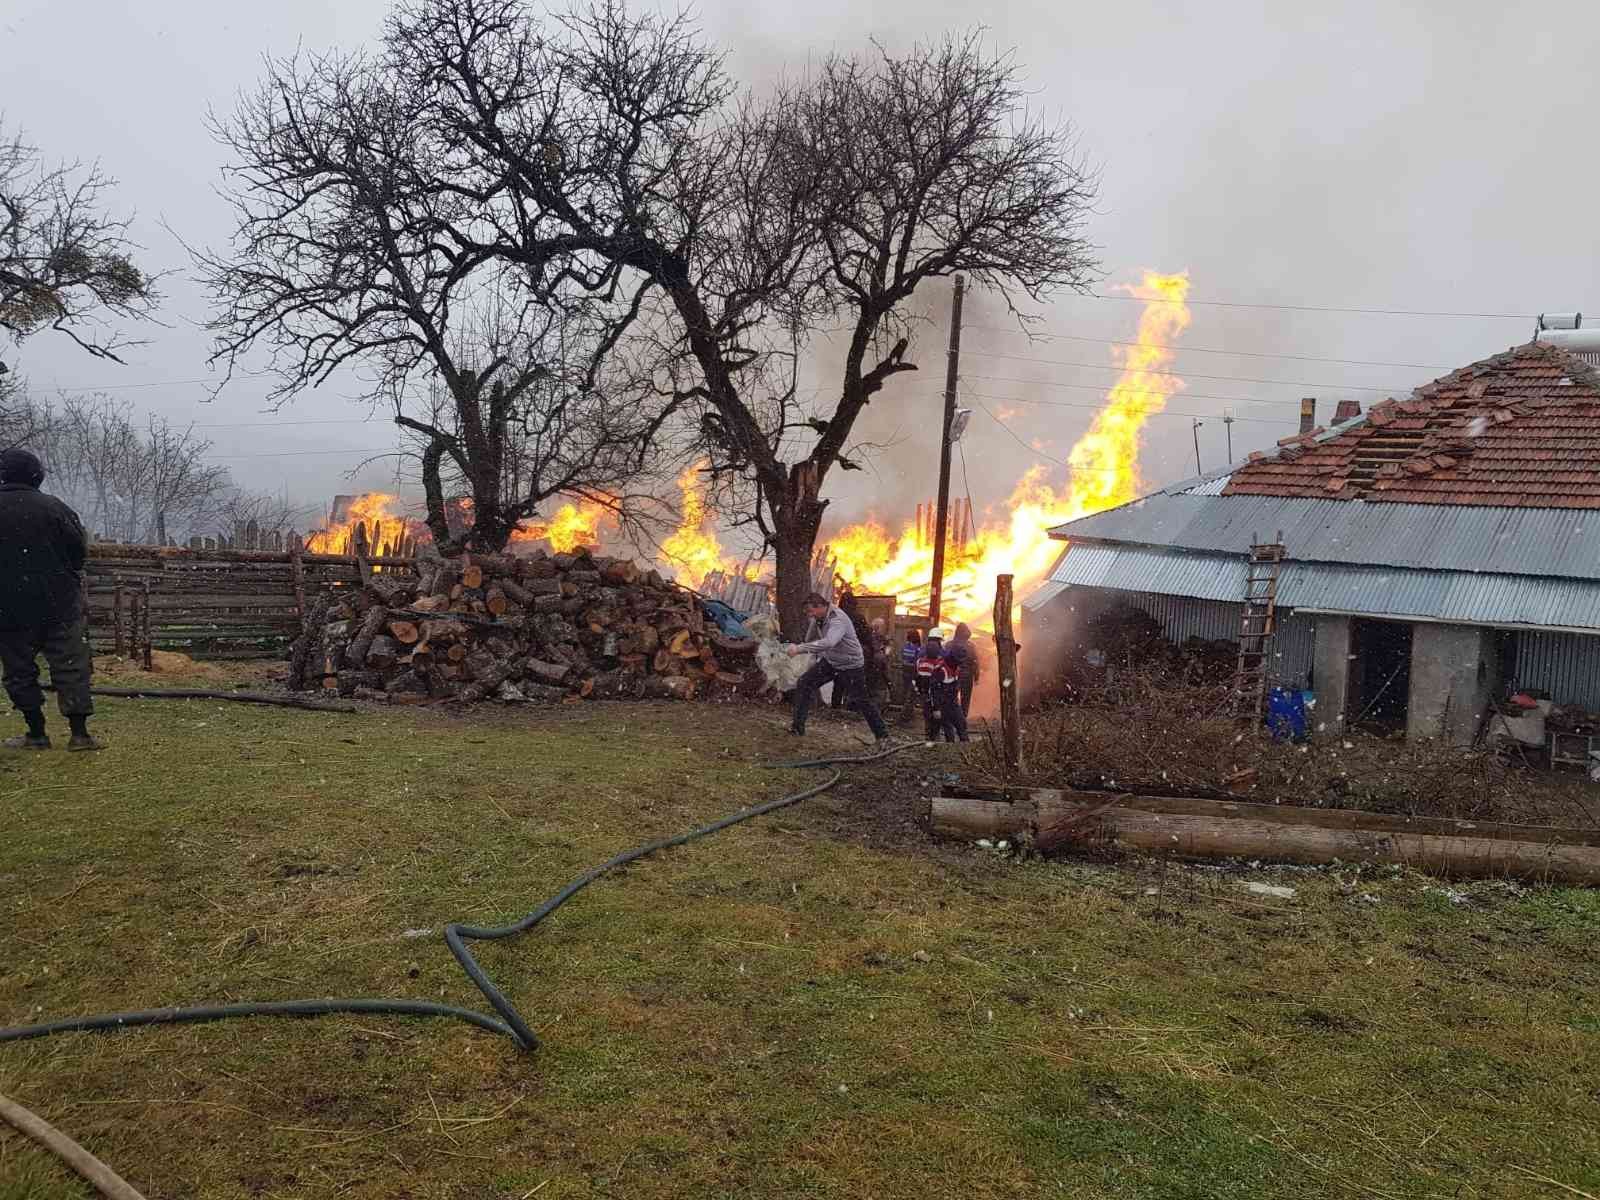 Kastamonu’da 2 ev ile bir ahırın yandığı yangın kontrol altına alındı #kastamonu